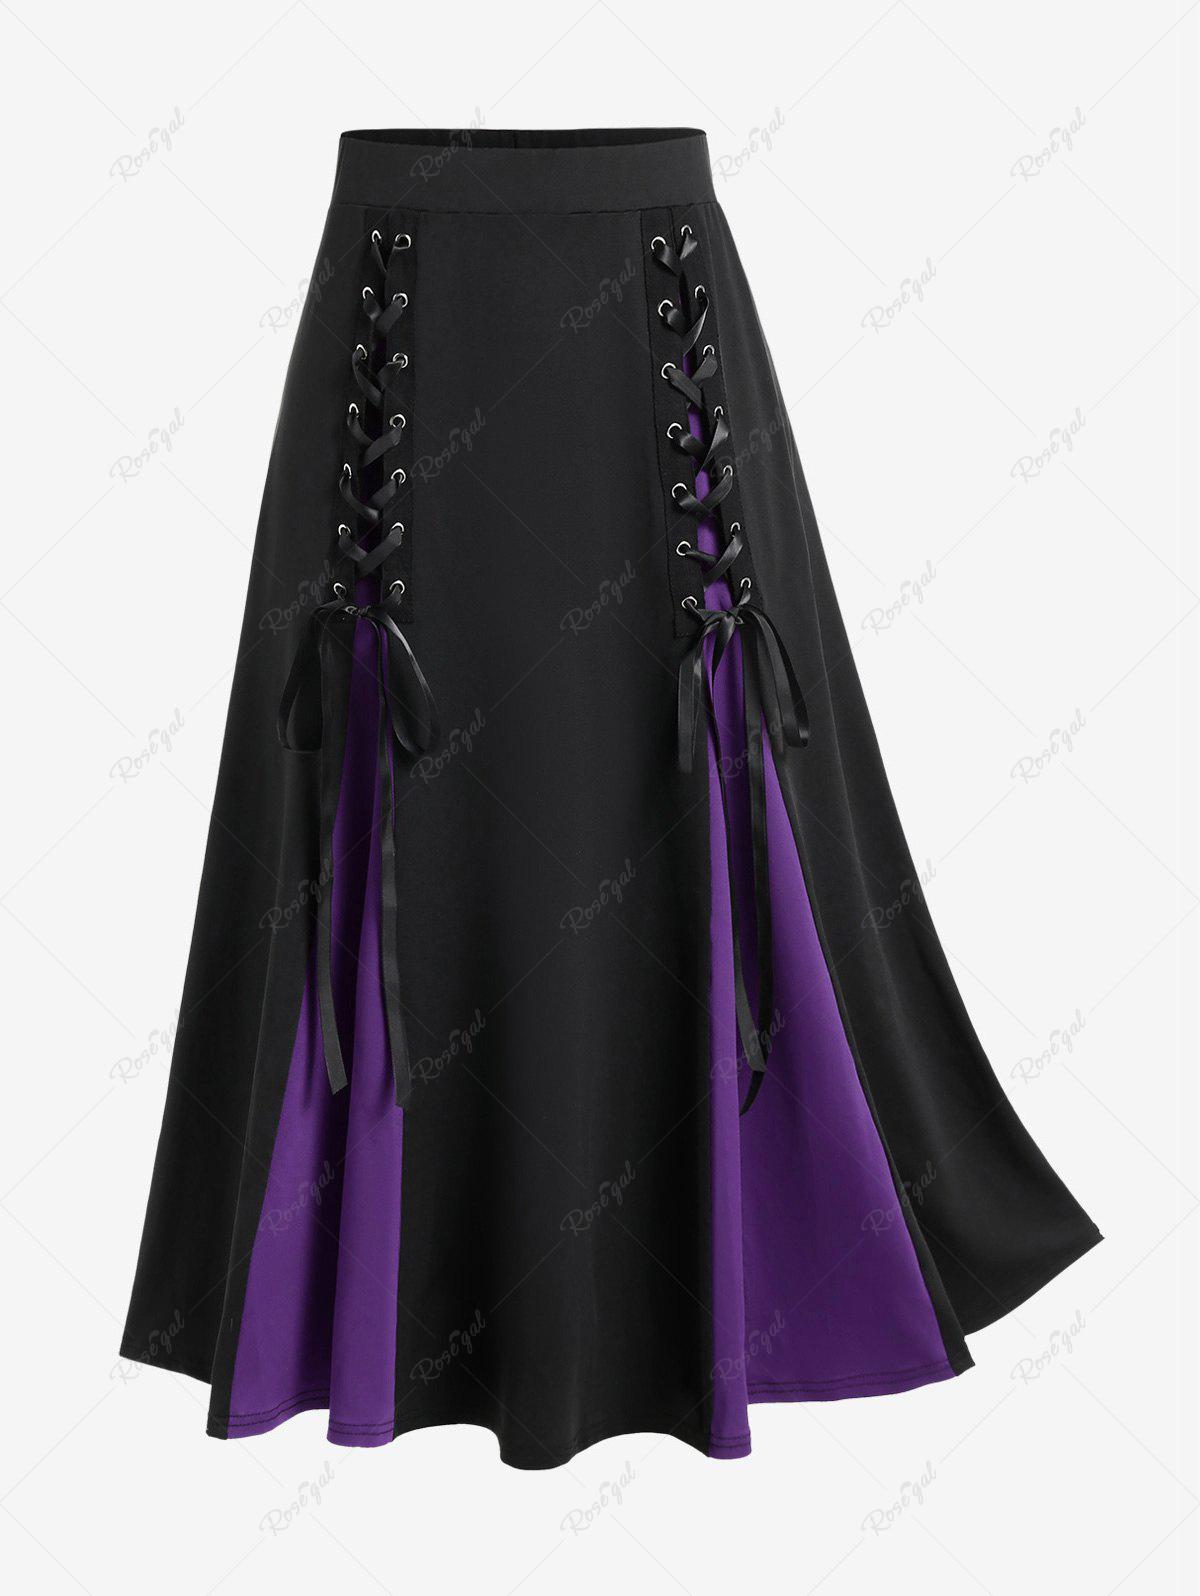 C.62.2 Silk Corset and Skirt